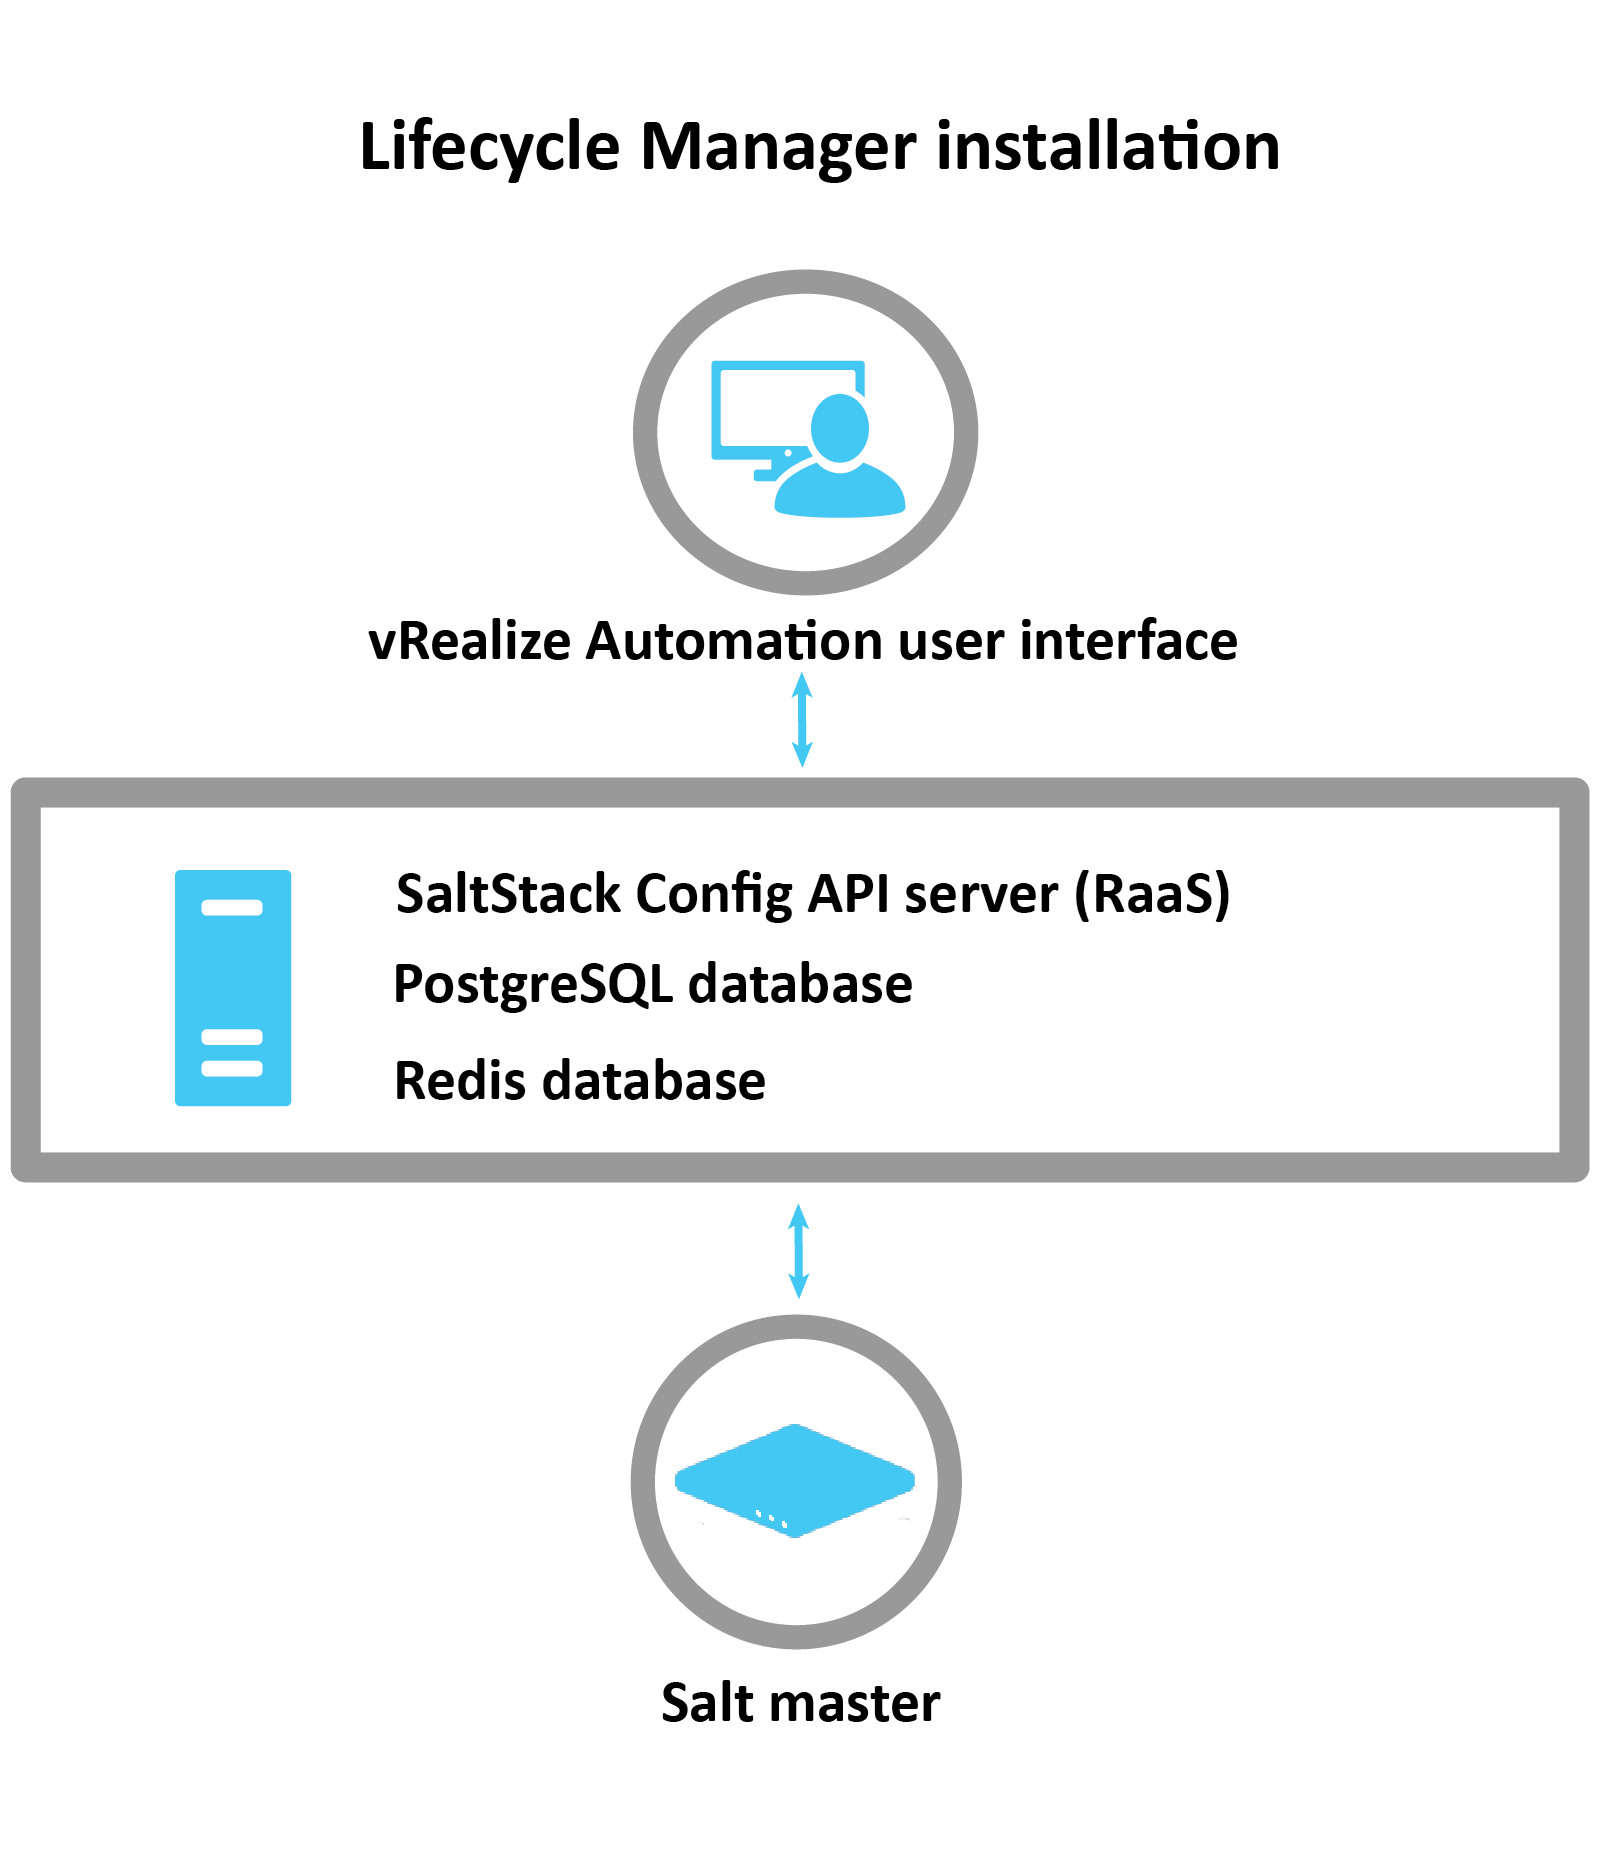 說明如何透過 LCM 安裝 SaltStack Config 的圖表：LCM 使用 vRA 介面安裝 RaaS 伺服器、Postgres 資料庫和 Redis 資料庫。安裝後，將設定 Salt 主節點。